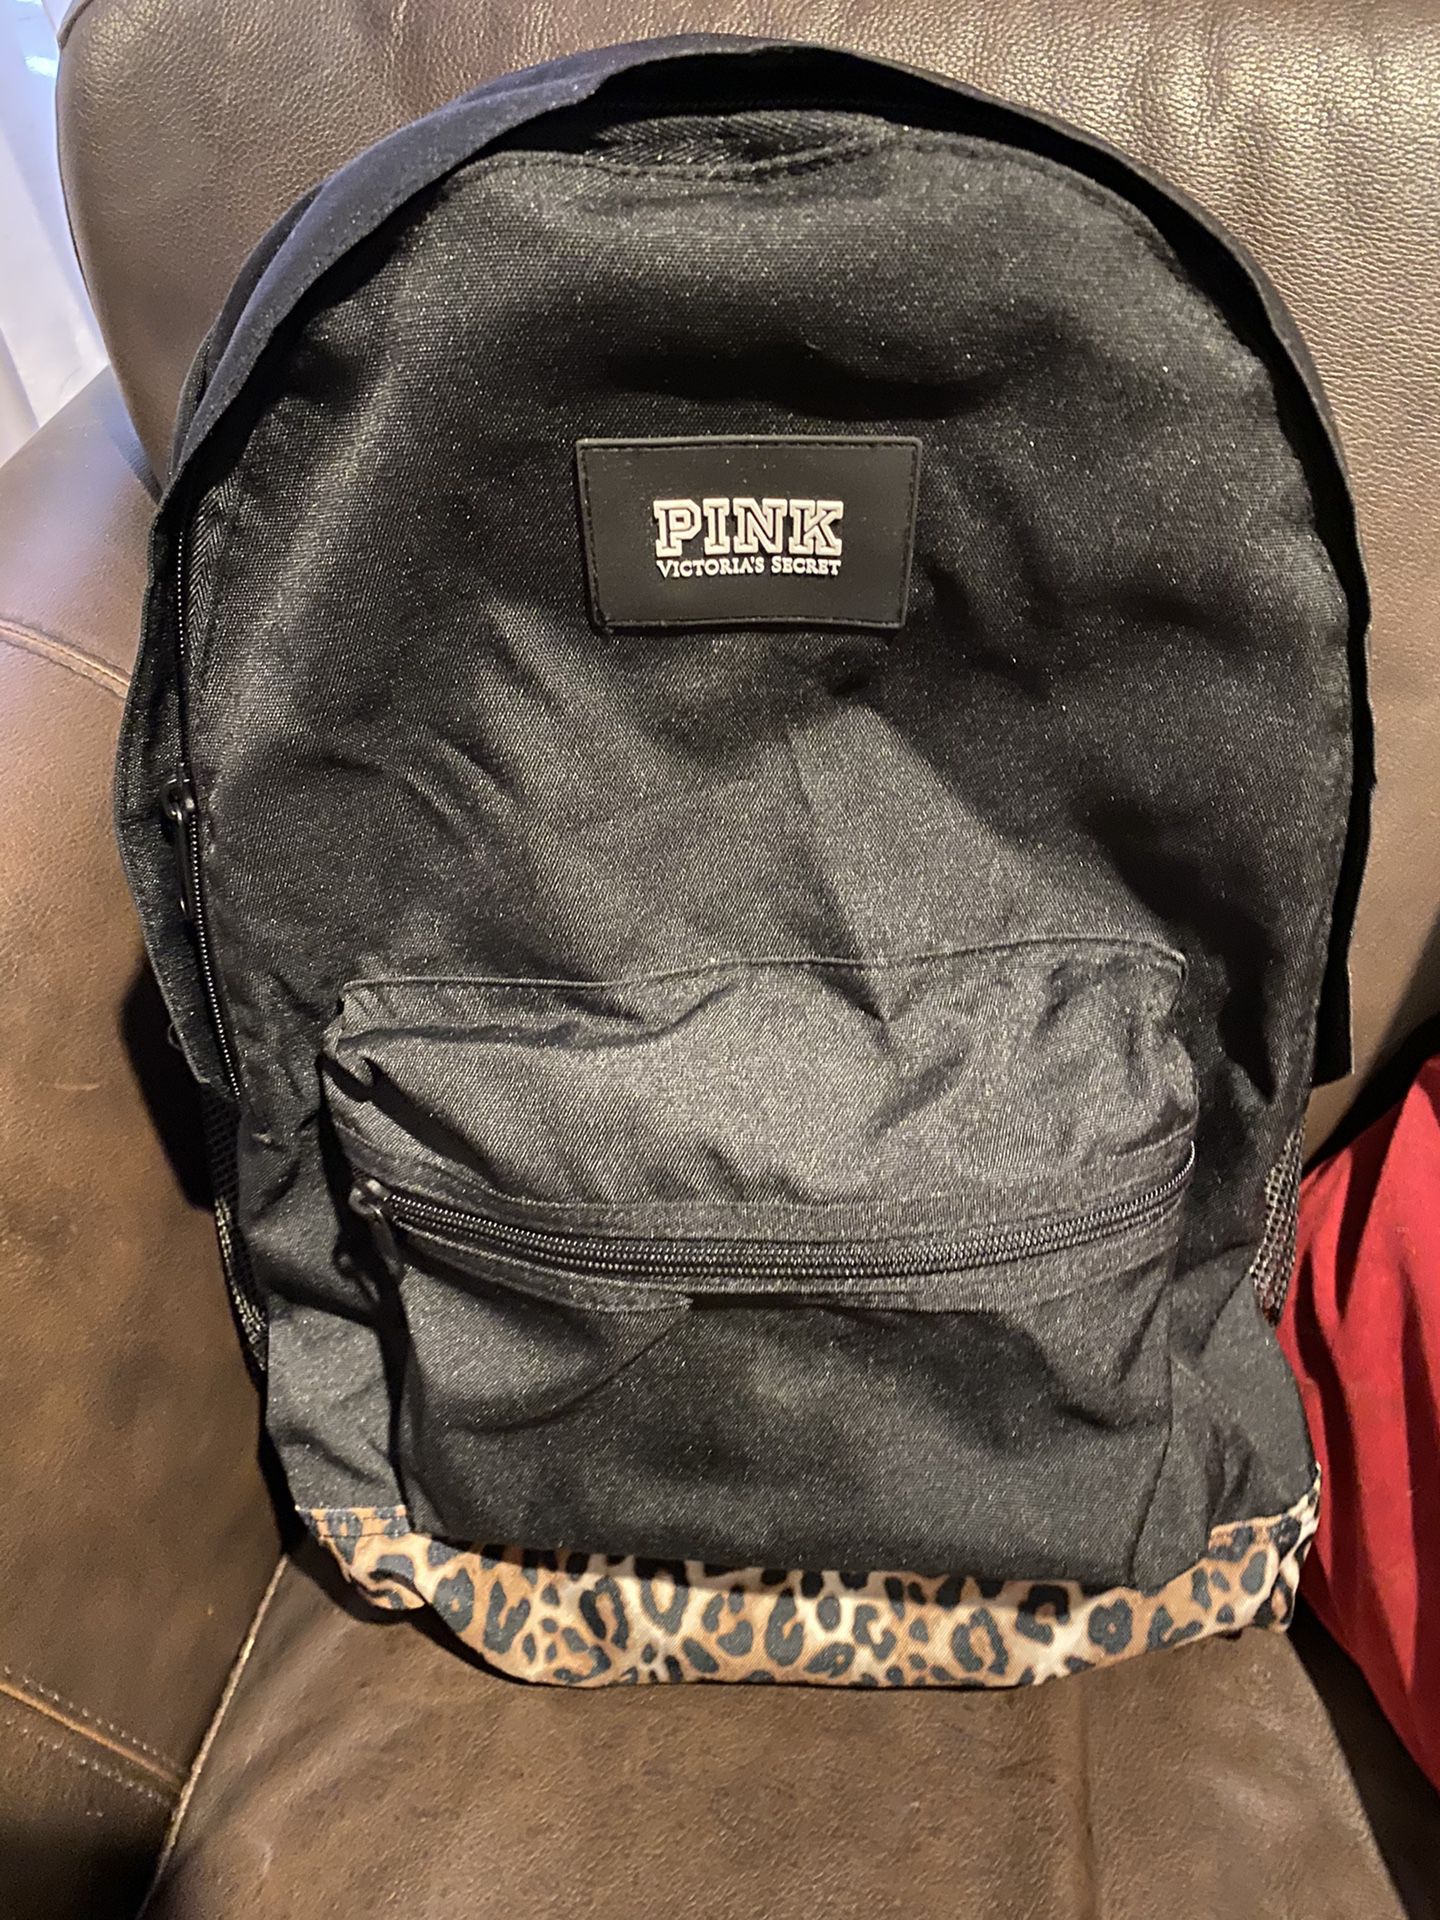 Victoria’s Secret pink backpack